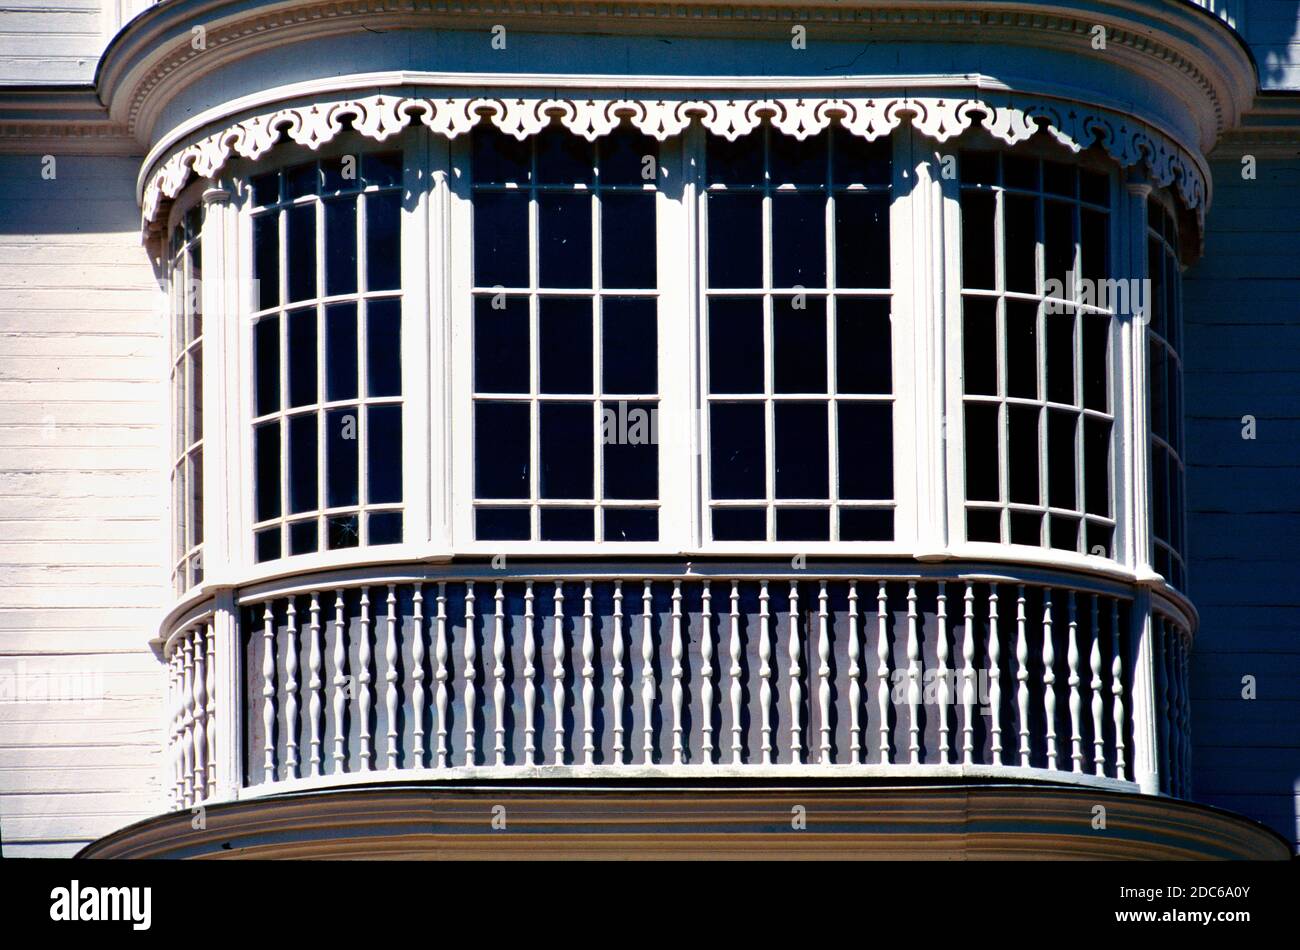 Fenêtre Oriel, fenêtre Bow, fenêtre Baie ou fenêtre Boussole de la c19e Maison créole, Maison Martin-Valliamée, Saint André la Réunion ou Île de la Réunion France Banque D'Images